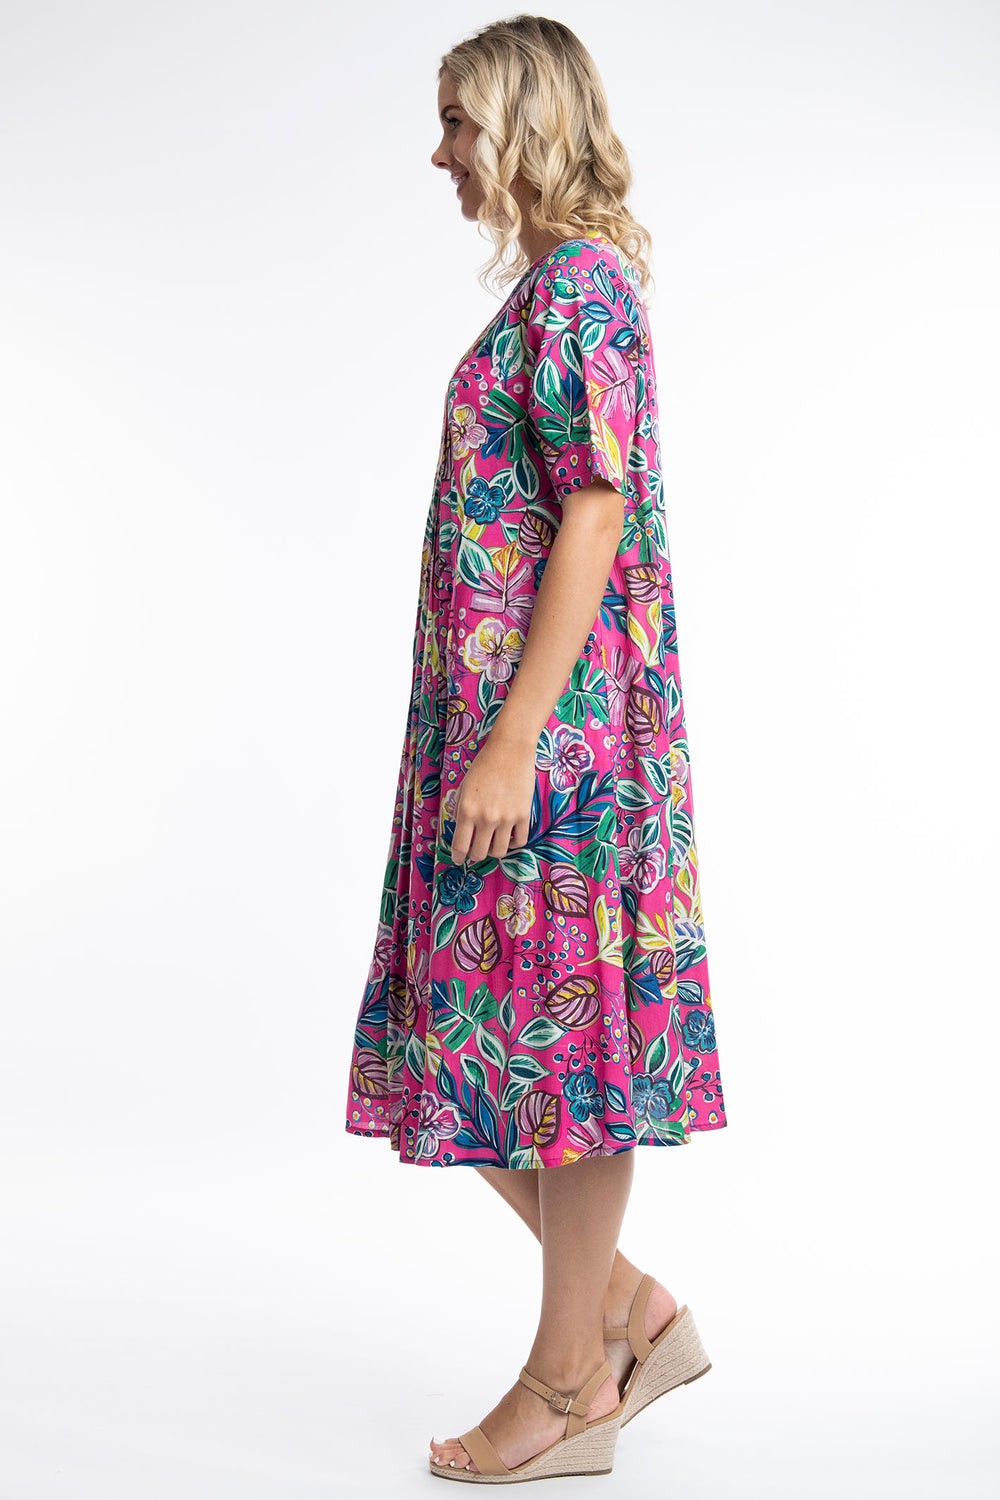 Orientique Balat 81263 Pink Tropical Print Pleat Front V-Neck Dress - Dotique